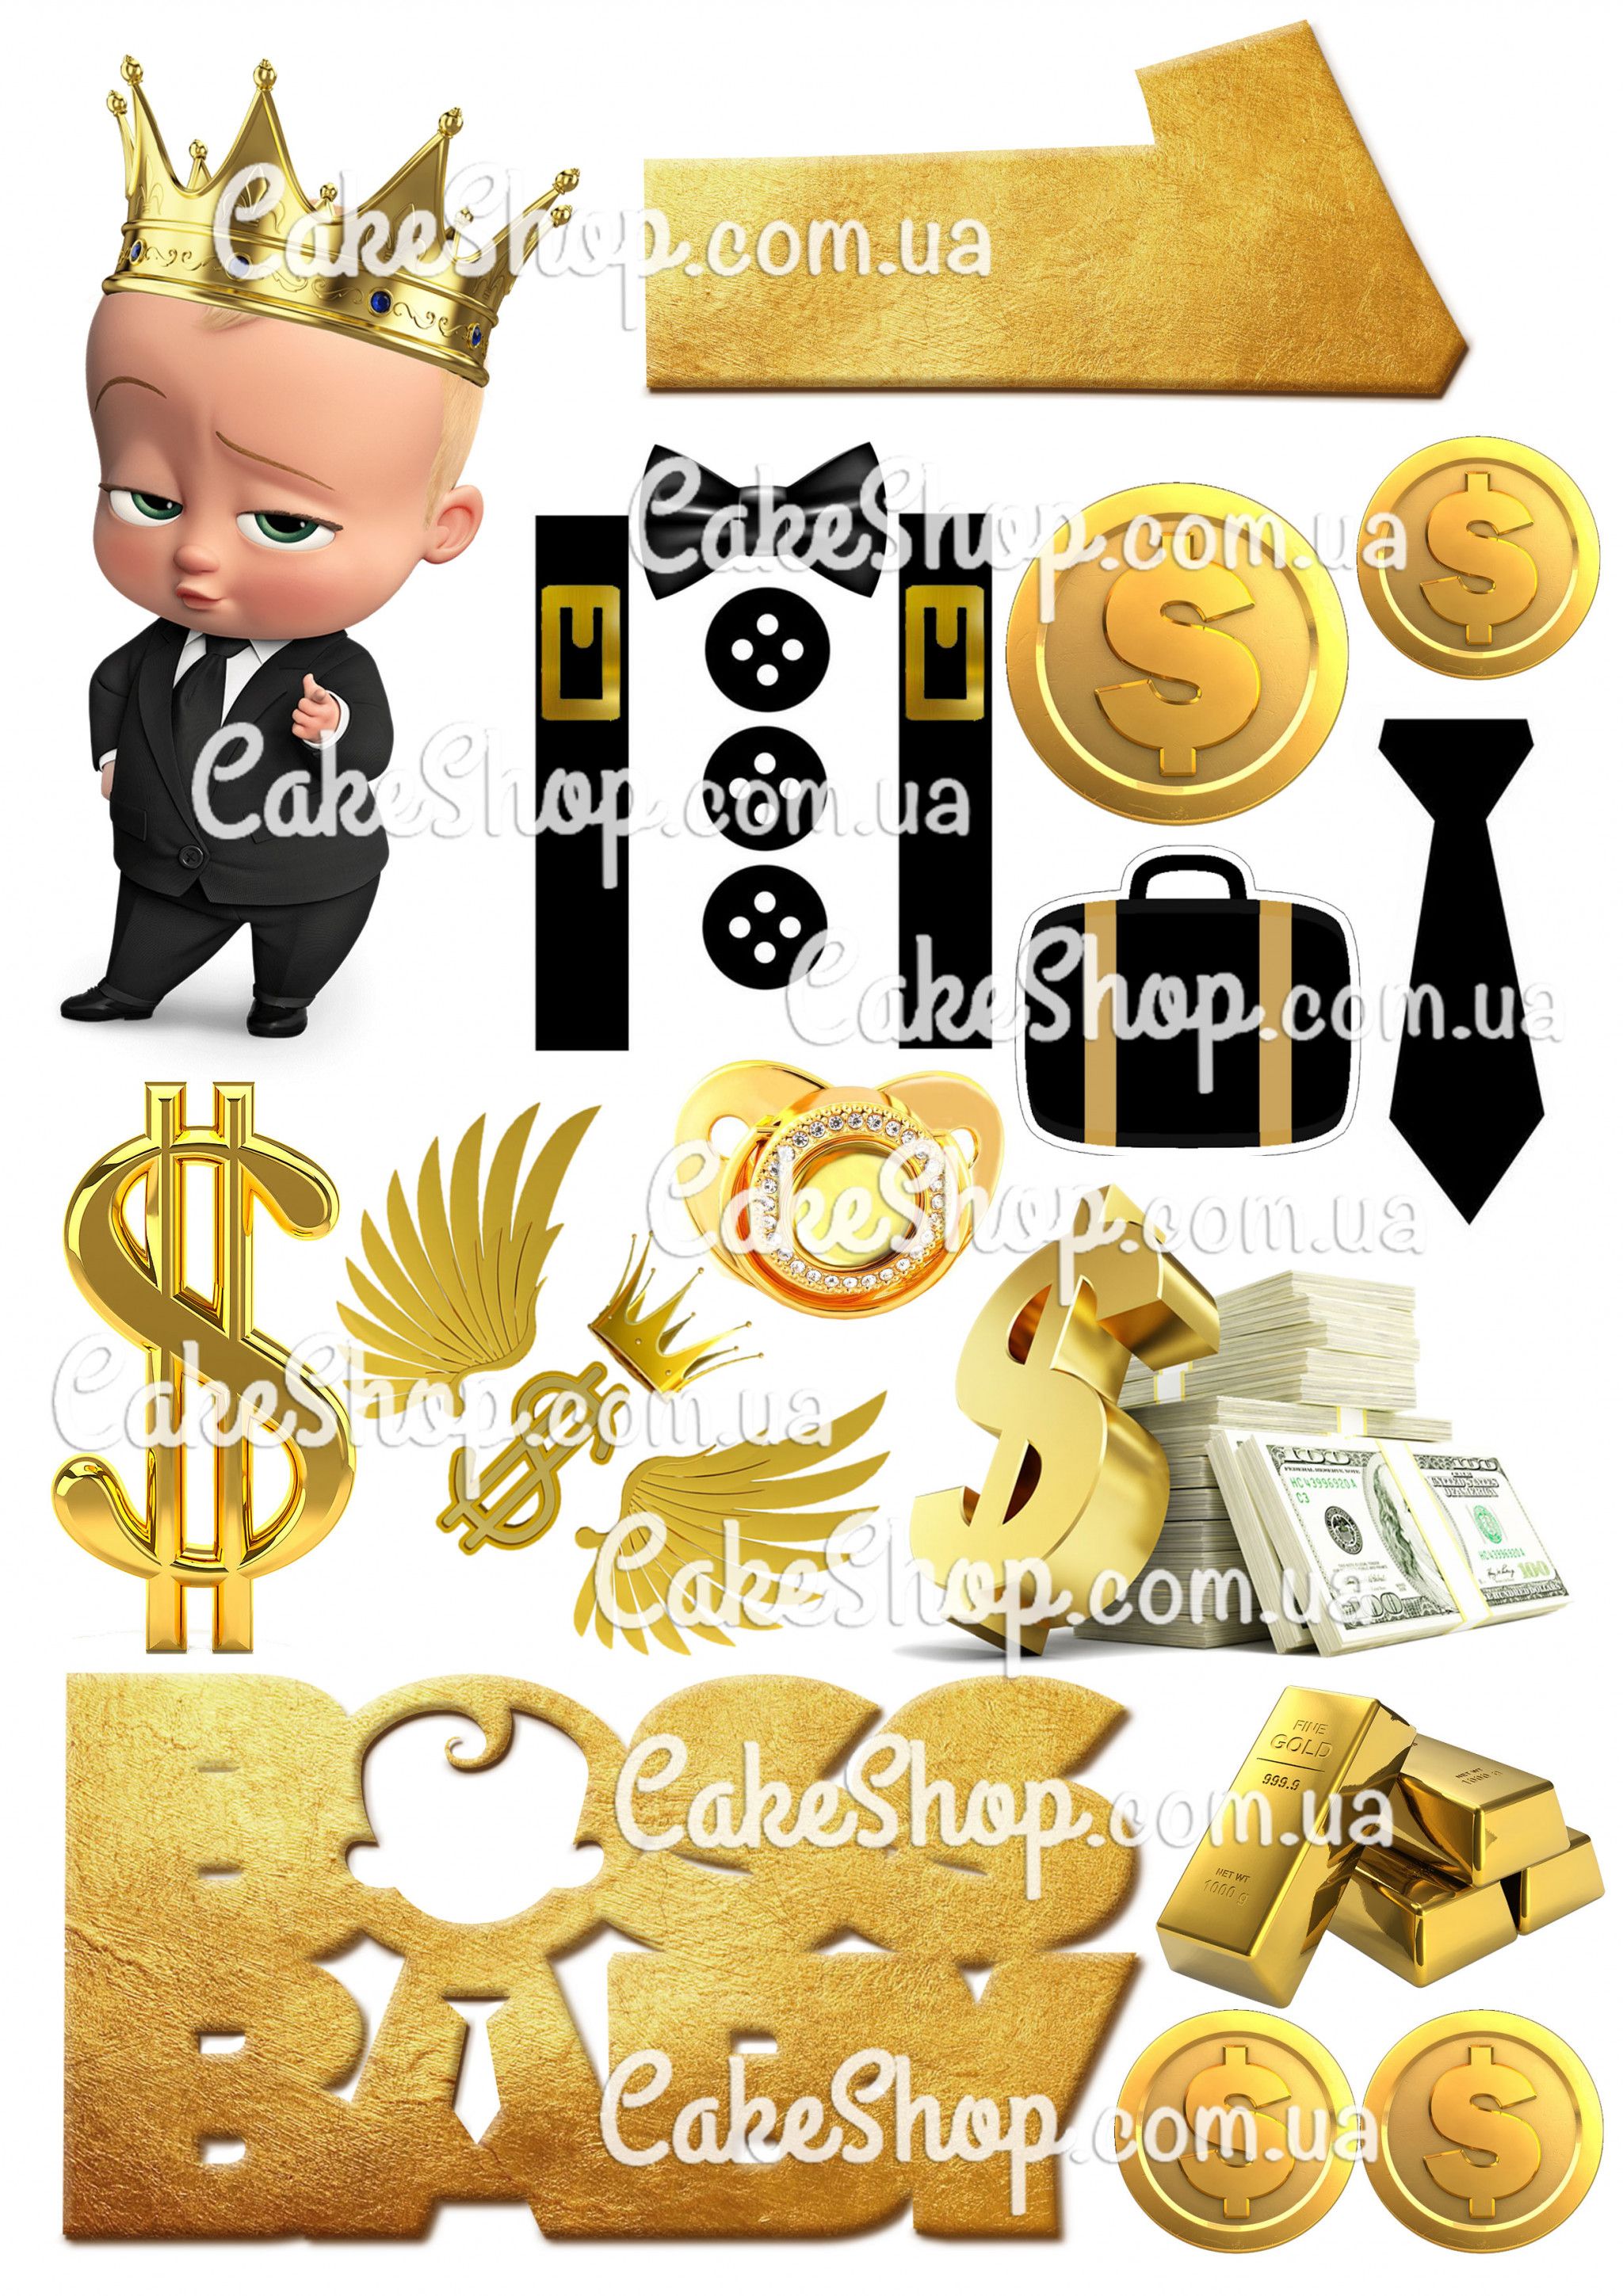 ⋗ Вафельная картинка  Бебби Босс золото купить в Украине ➛ CakeShop.com.ua, фото